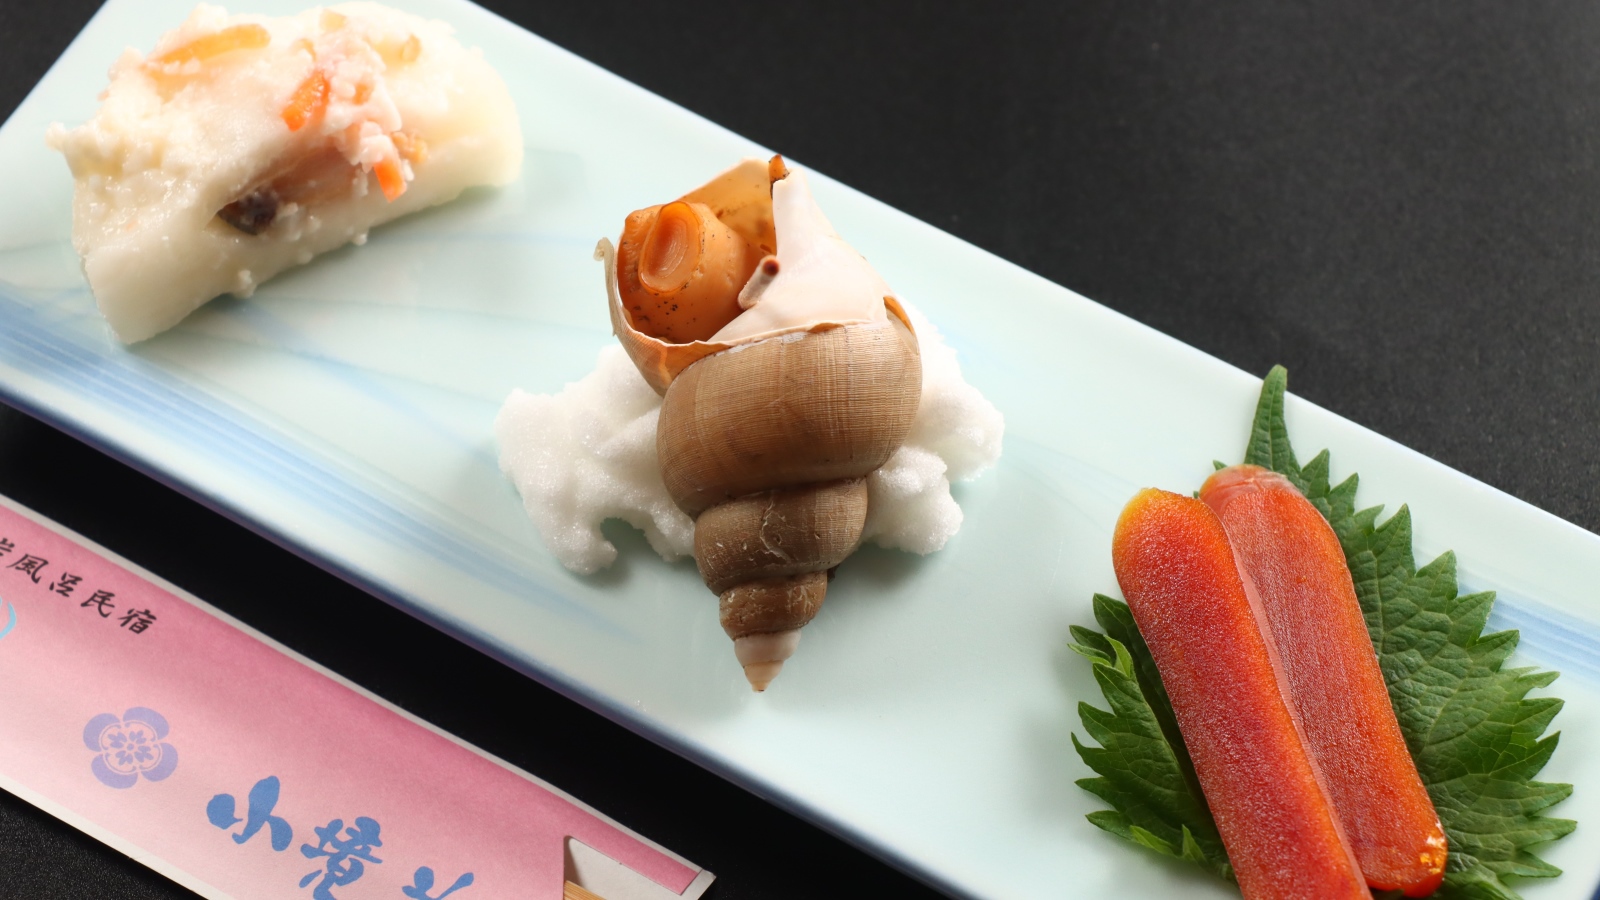 夕食一例八寸かぶら寿司からすみバイ貝